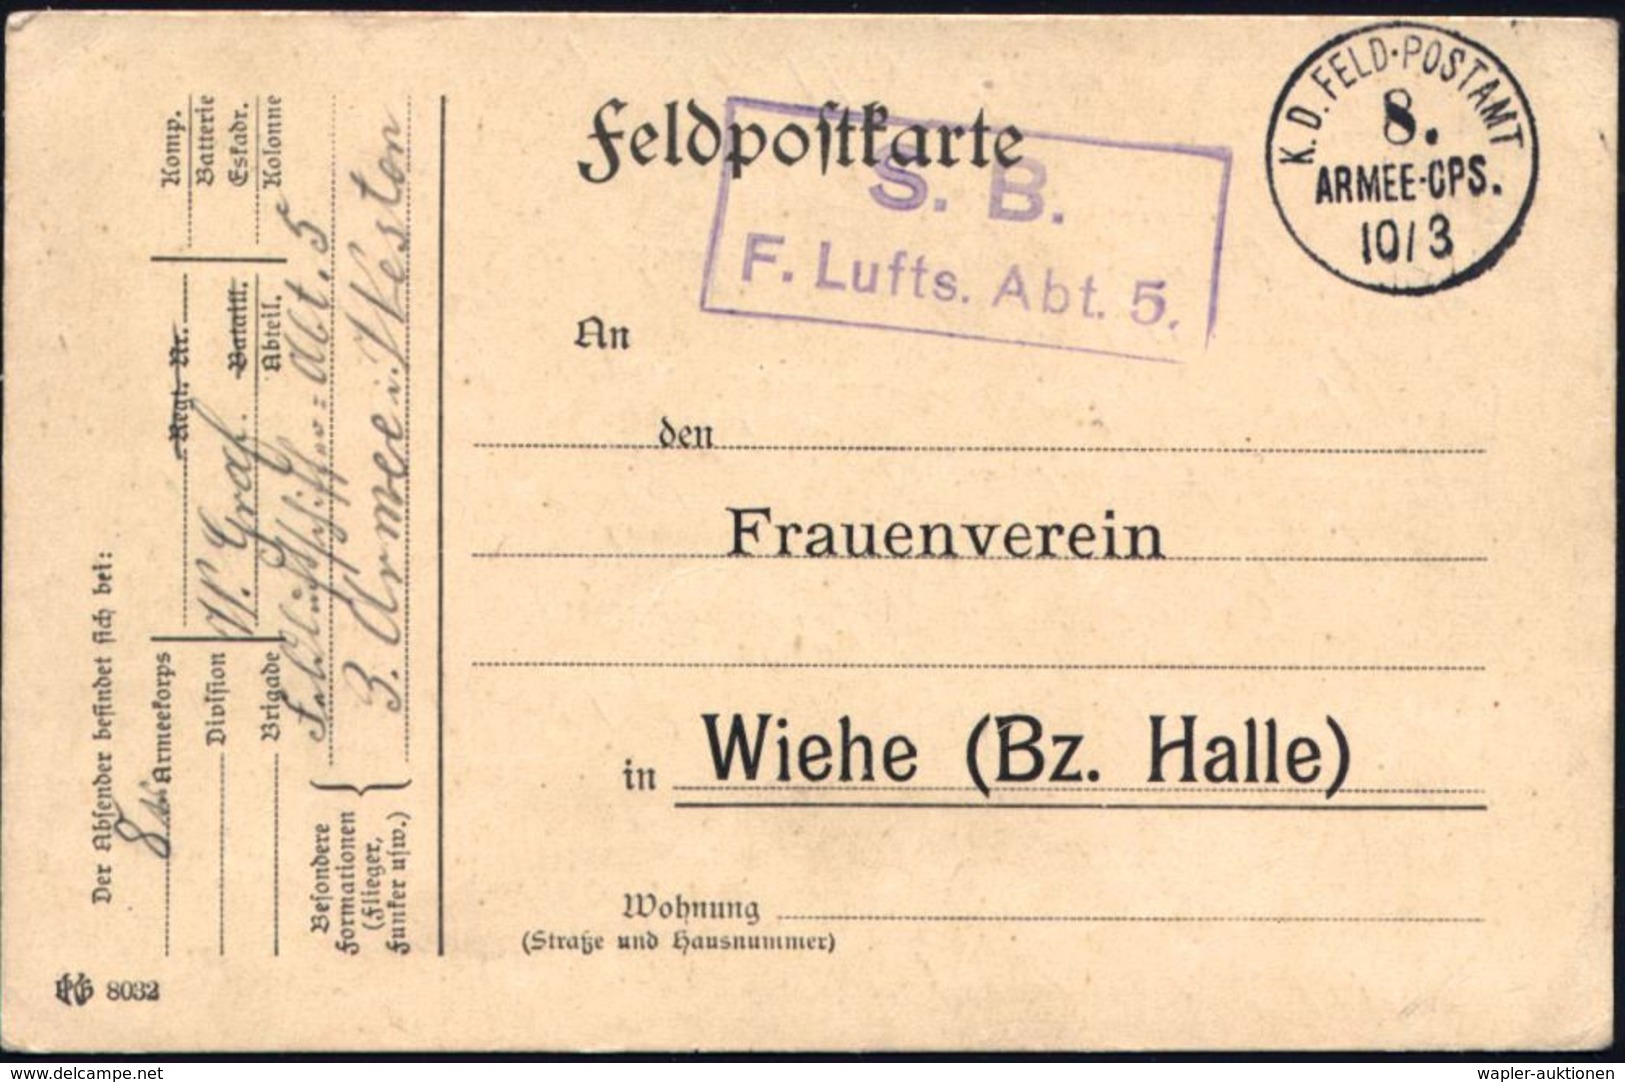 LUFTFELDPOST 1914-18 LUFTSCHIFFE & LUFTSCHIFFER-EINHEITEN : DEUTSCHES REICH 1915 (10.3.) 1K: K.D. FELDPOSTAMT/8./Armee-C - Zeppelins